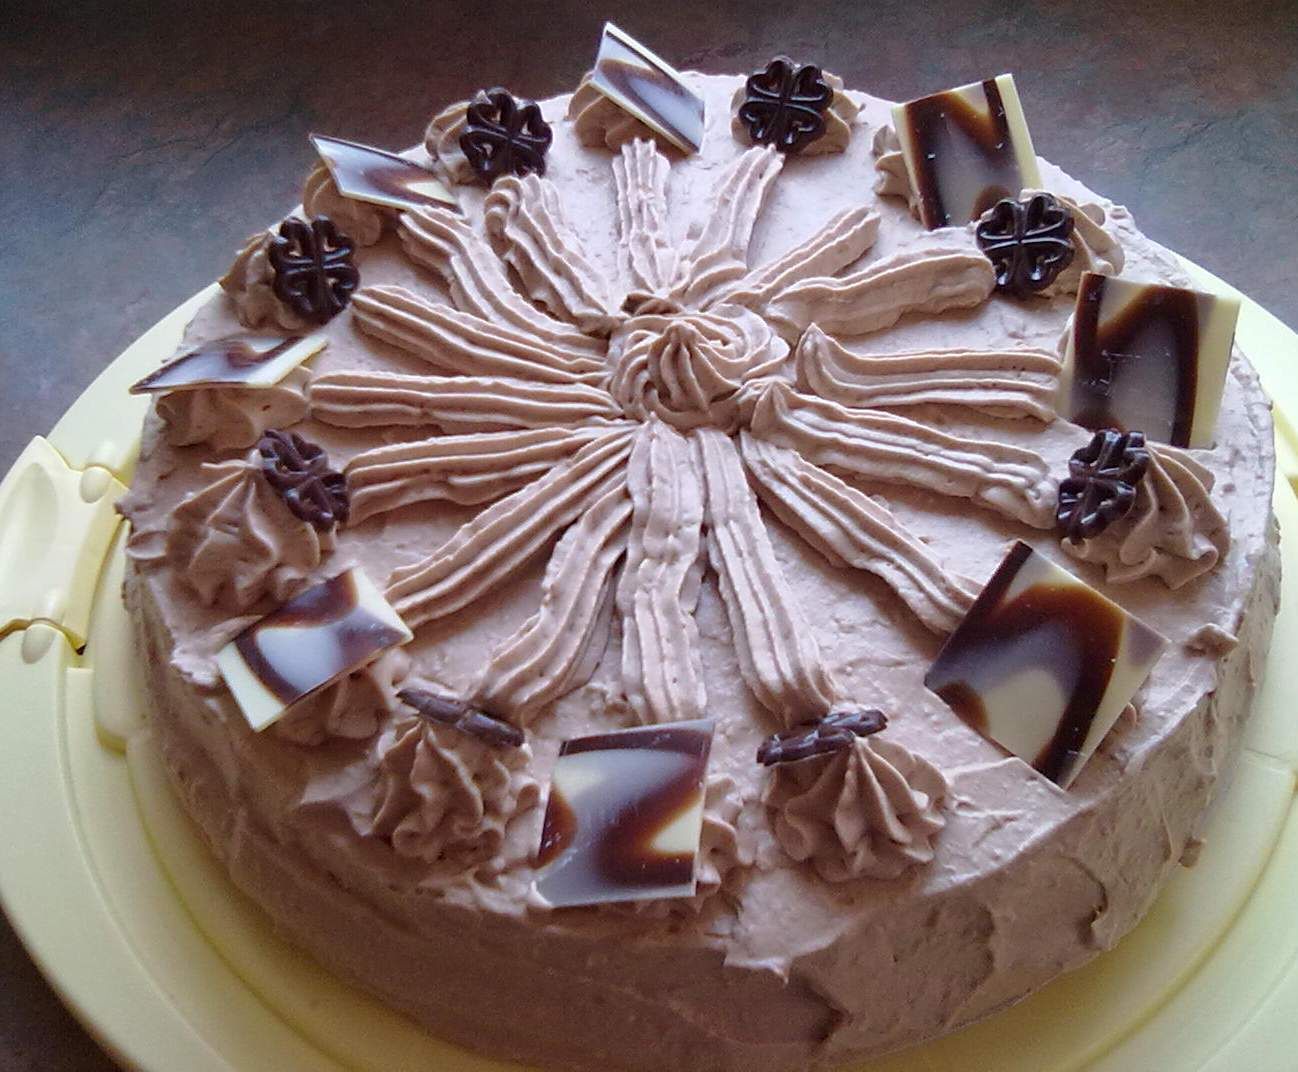 Шоколадный торт Милка